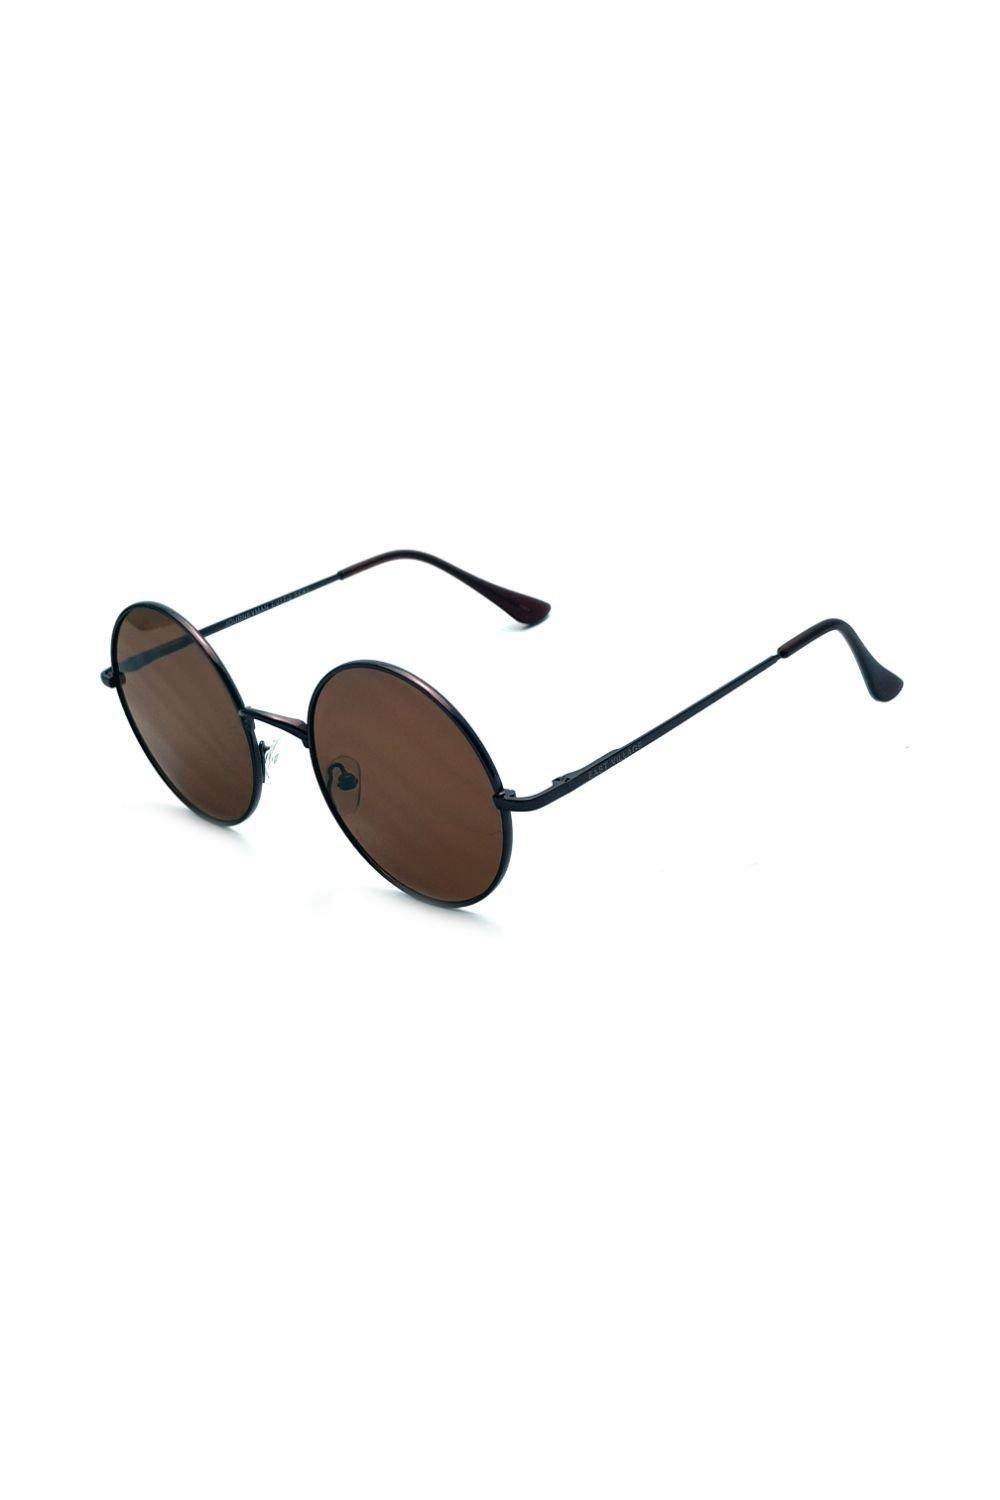 солнцезащитные очки авиаторы jordan east village черный Круглые солнцезащитные очки Journeyman East Village, медный